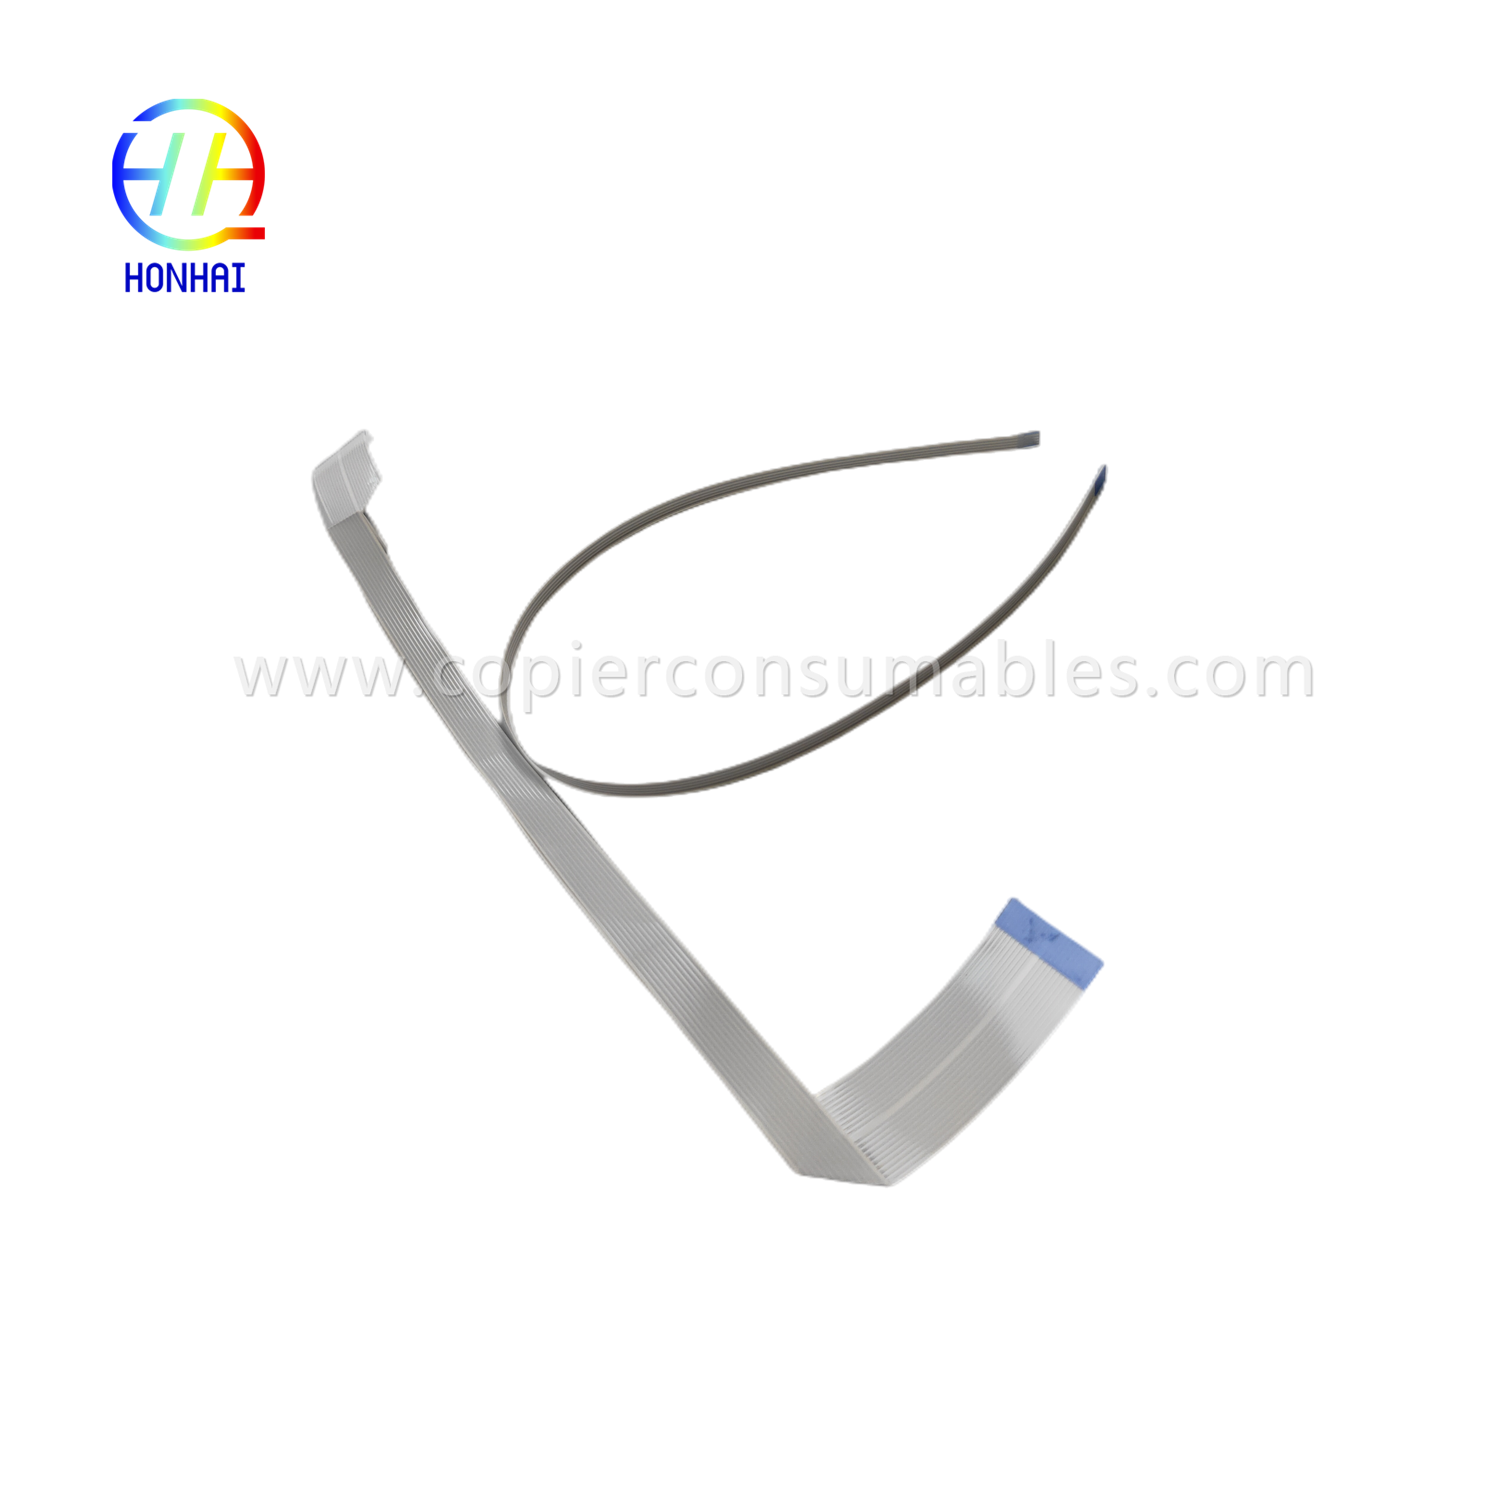 Kabel Fleksibel untuk kabel kepala Epson L1110 L3110 L3210 L3150 L3250 L5190 L5290